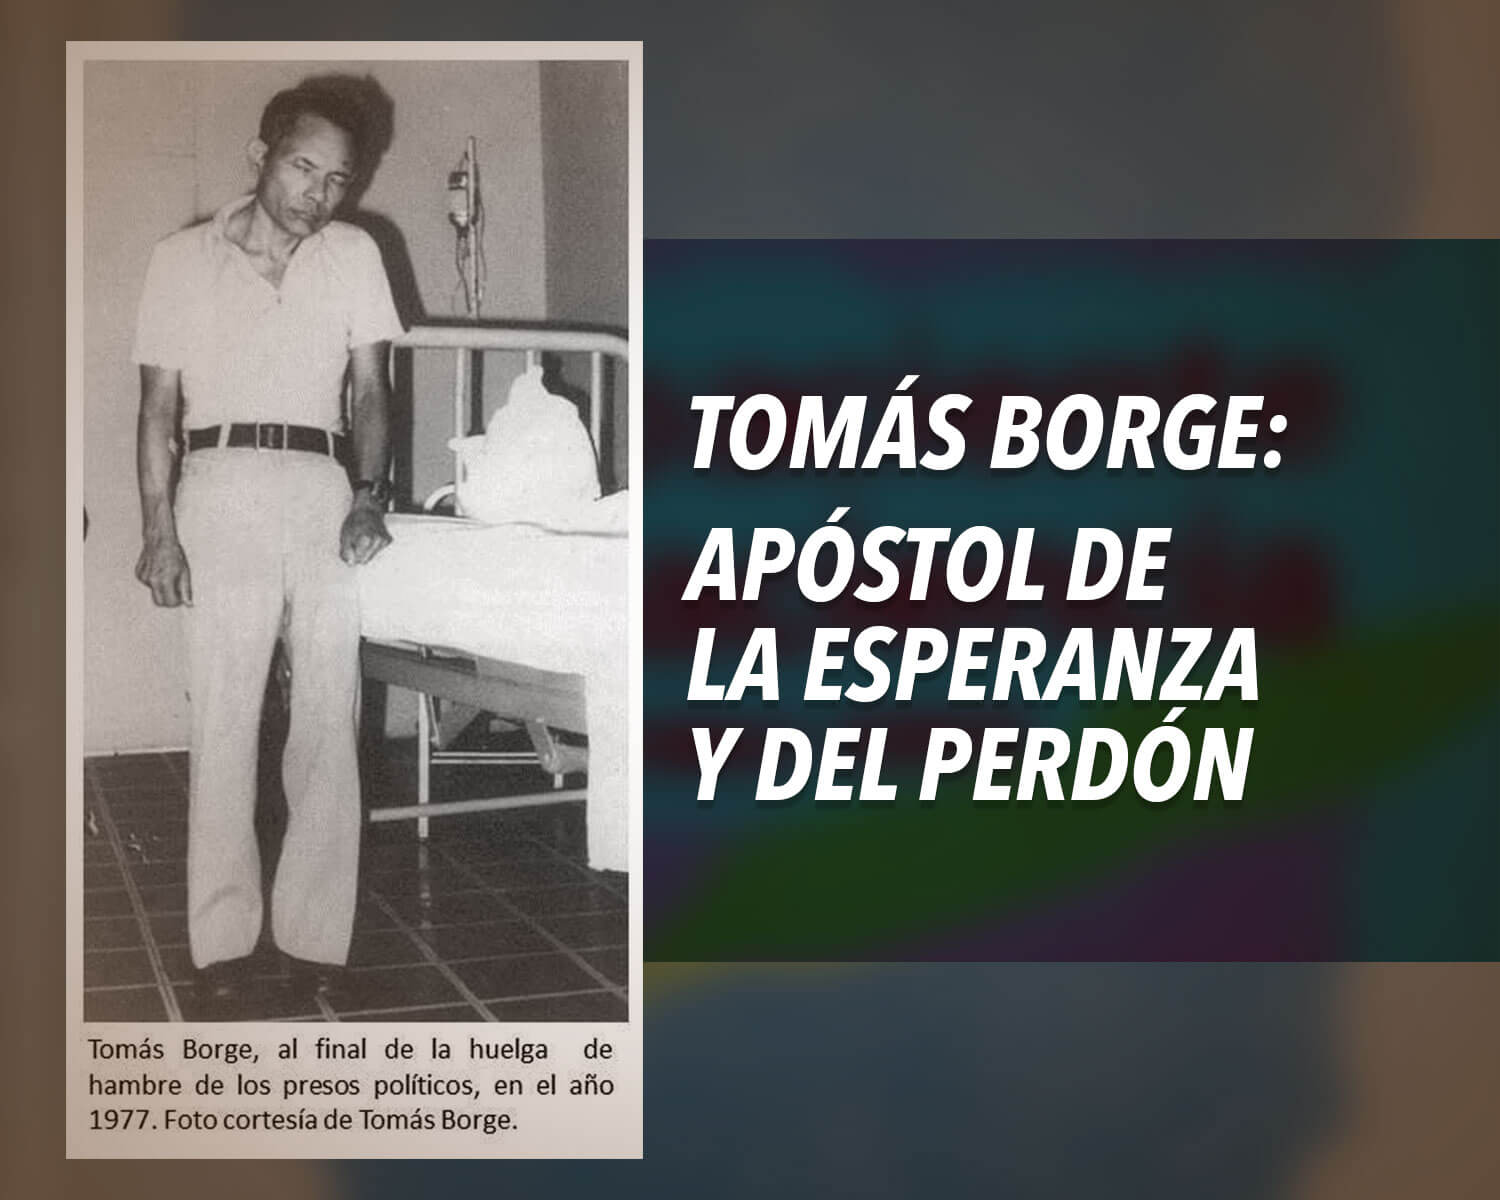 Tomás Borge: apóstol de la esperanza y del perdón